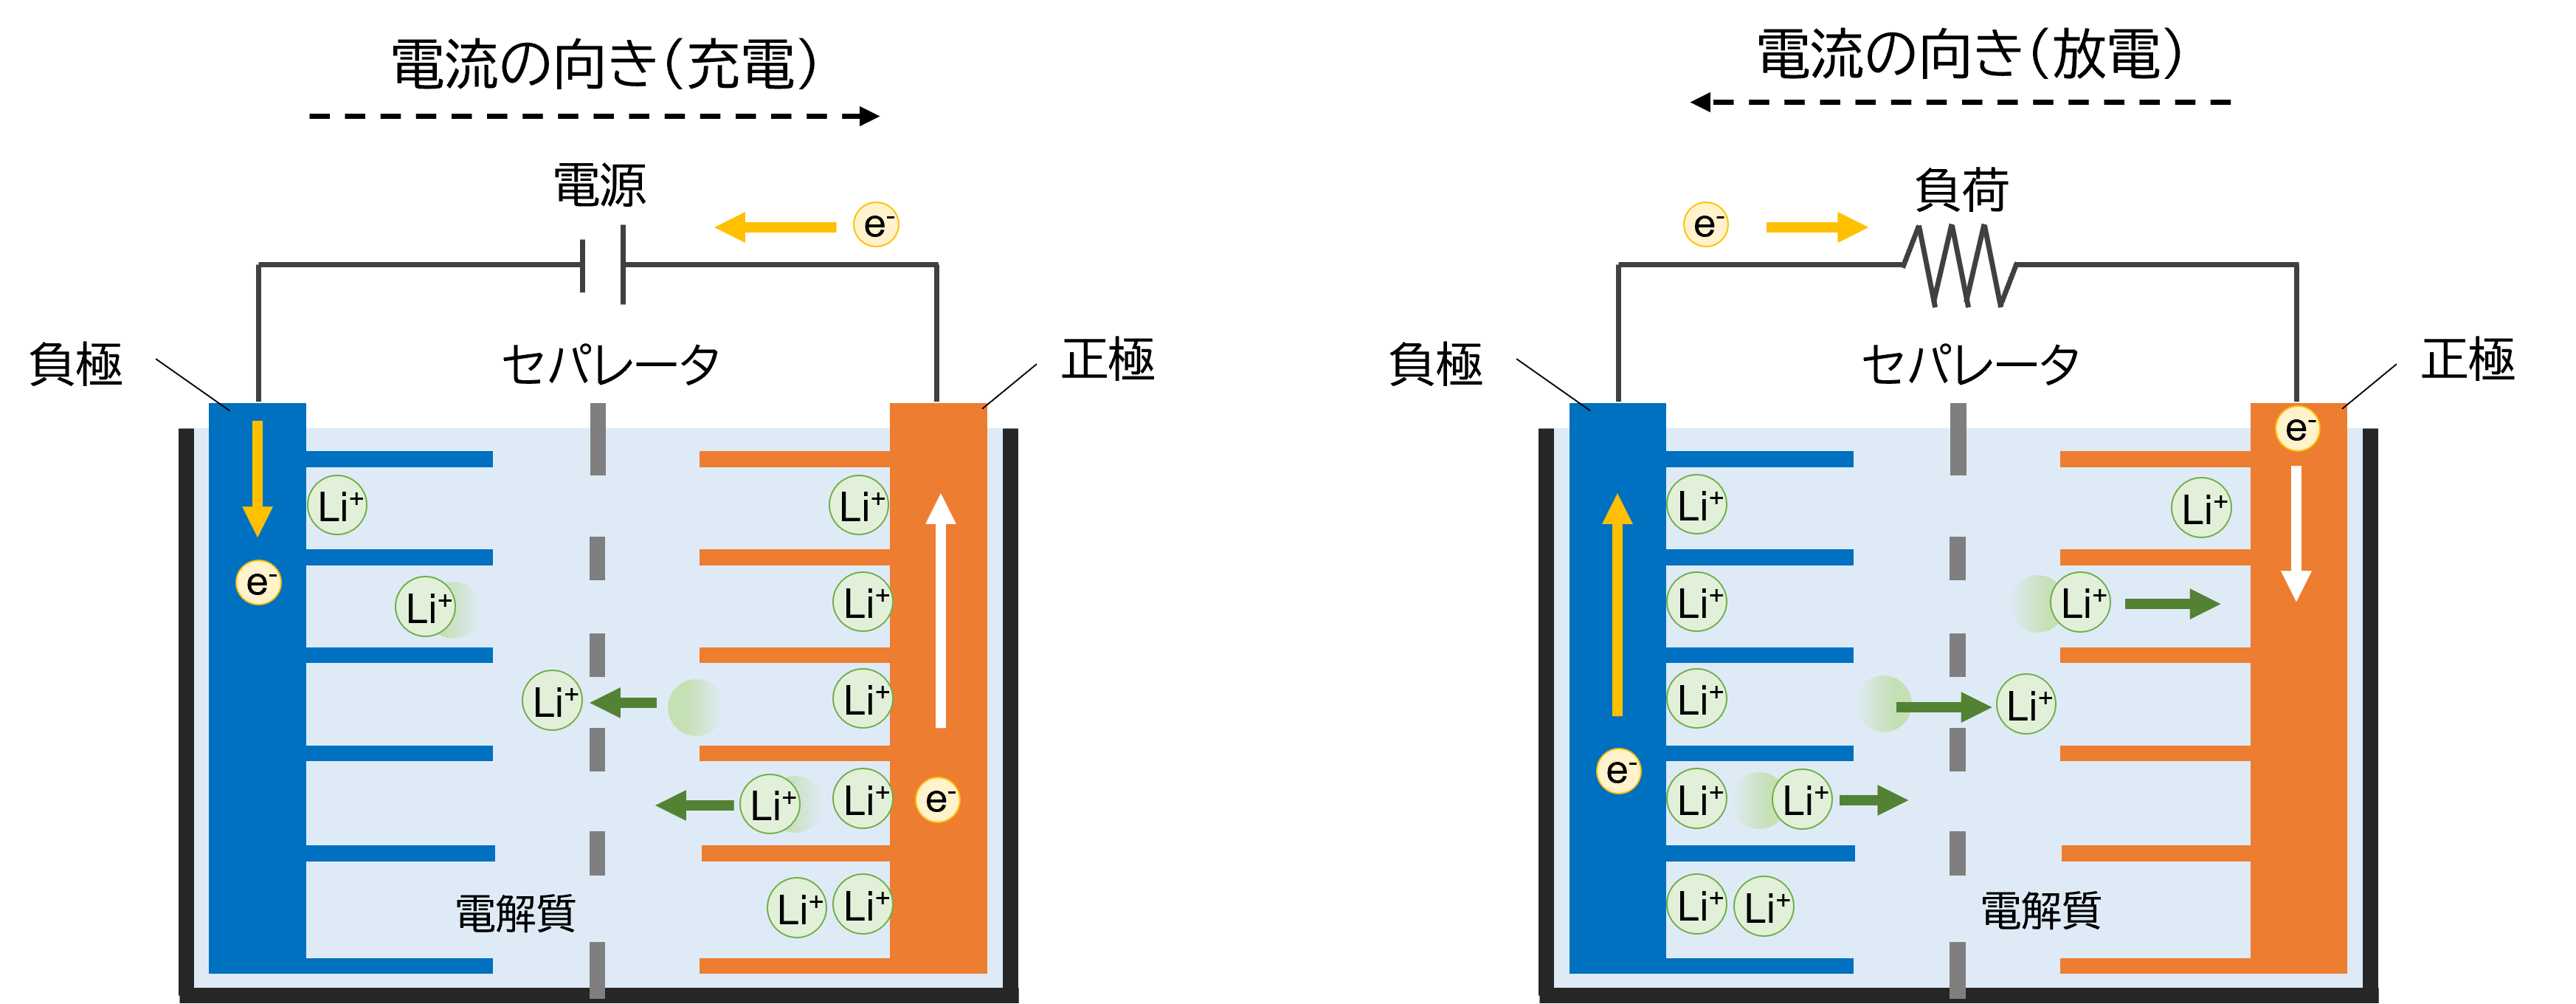 リチウムイオン電池の仕組み